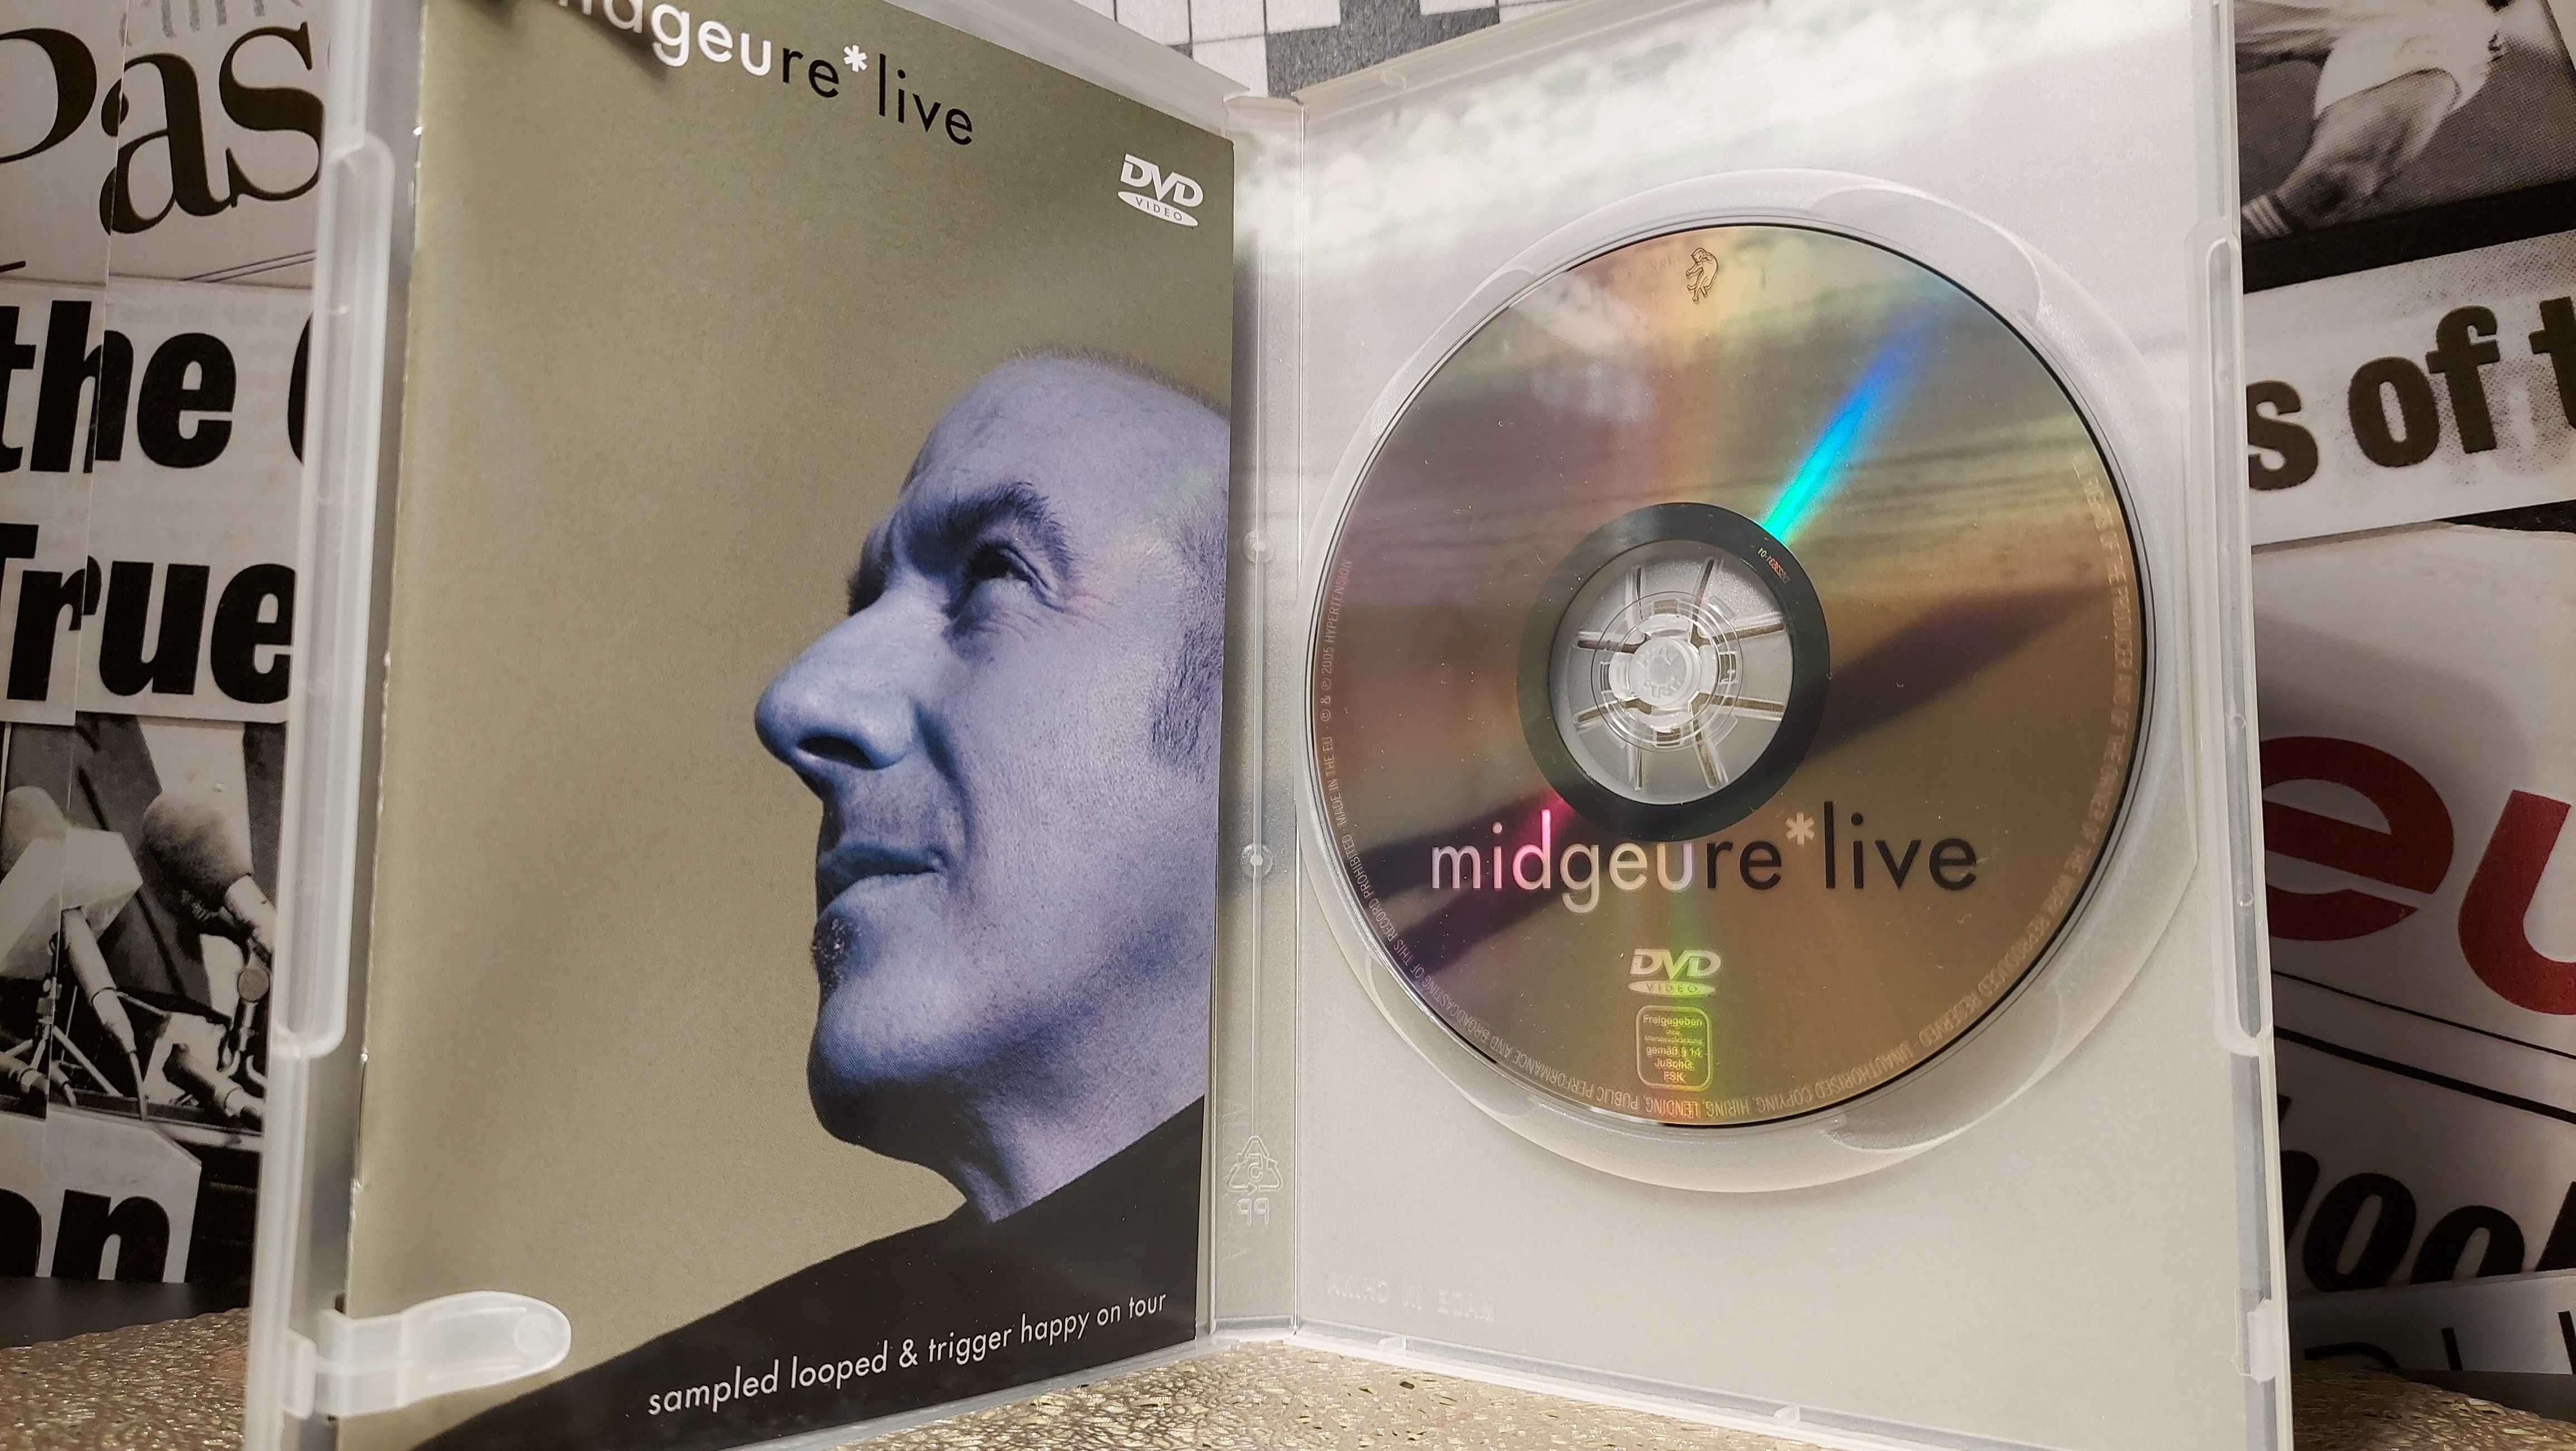 Midge Ure - Live Sampled Looped & Trigger Happy On Tour Koncert DVD